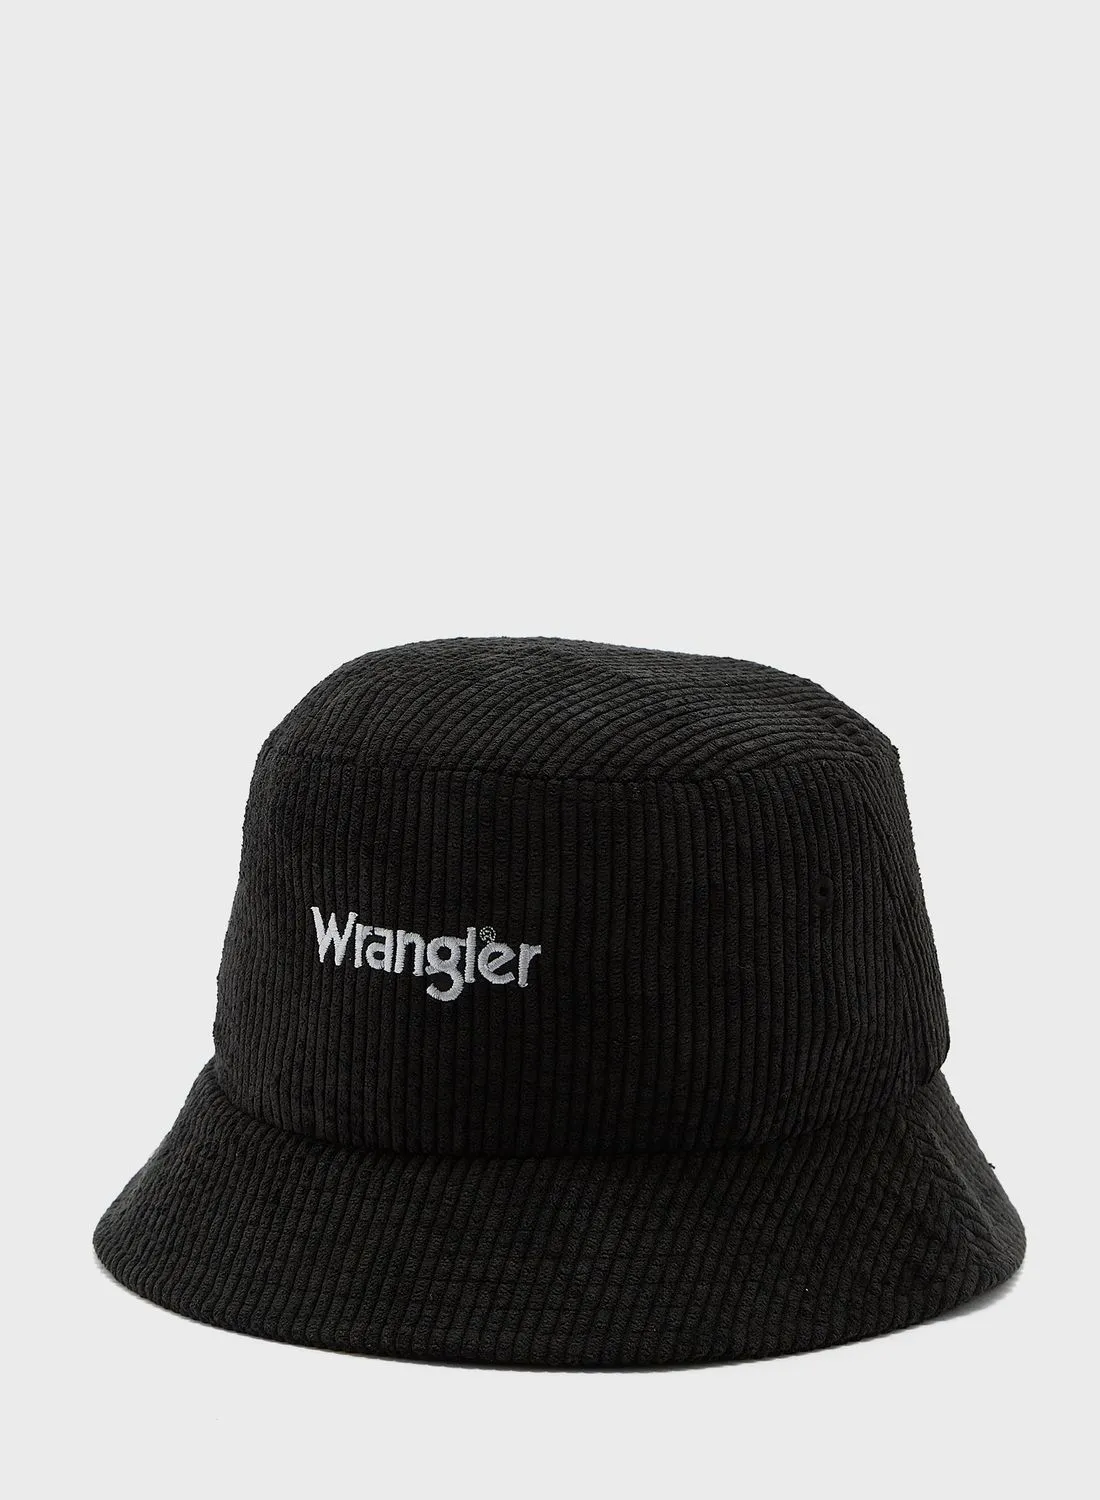 Wrangler Casual Bucket Hat